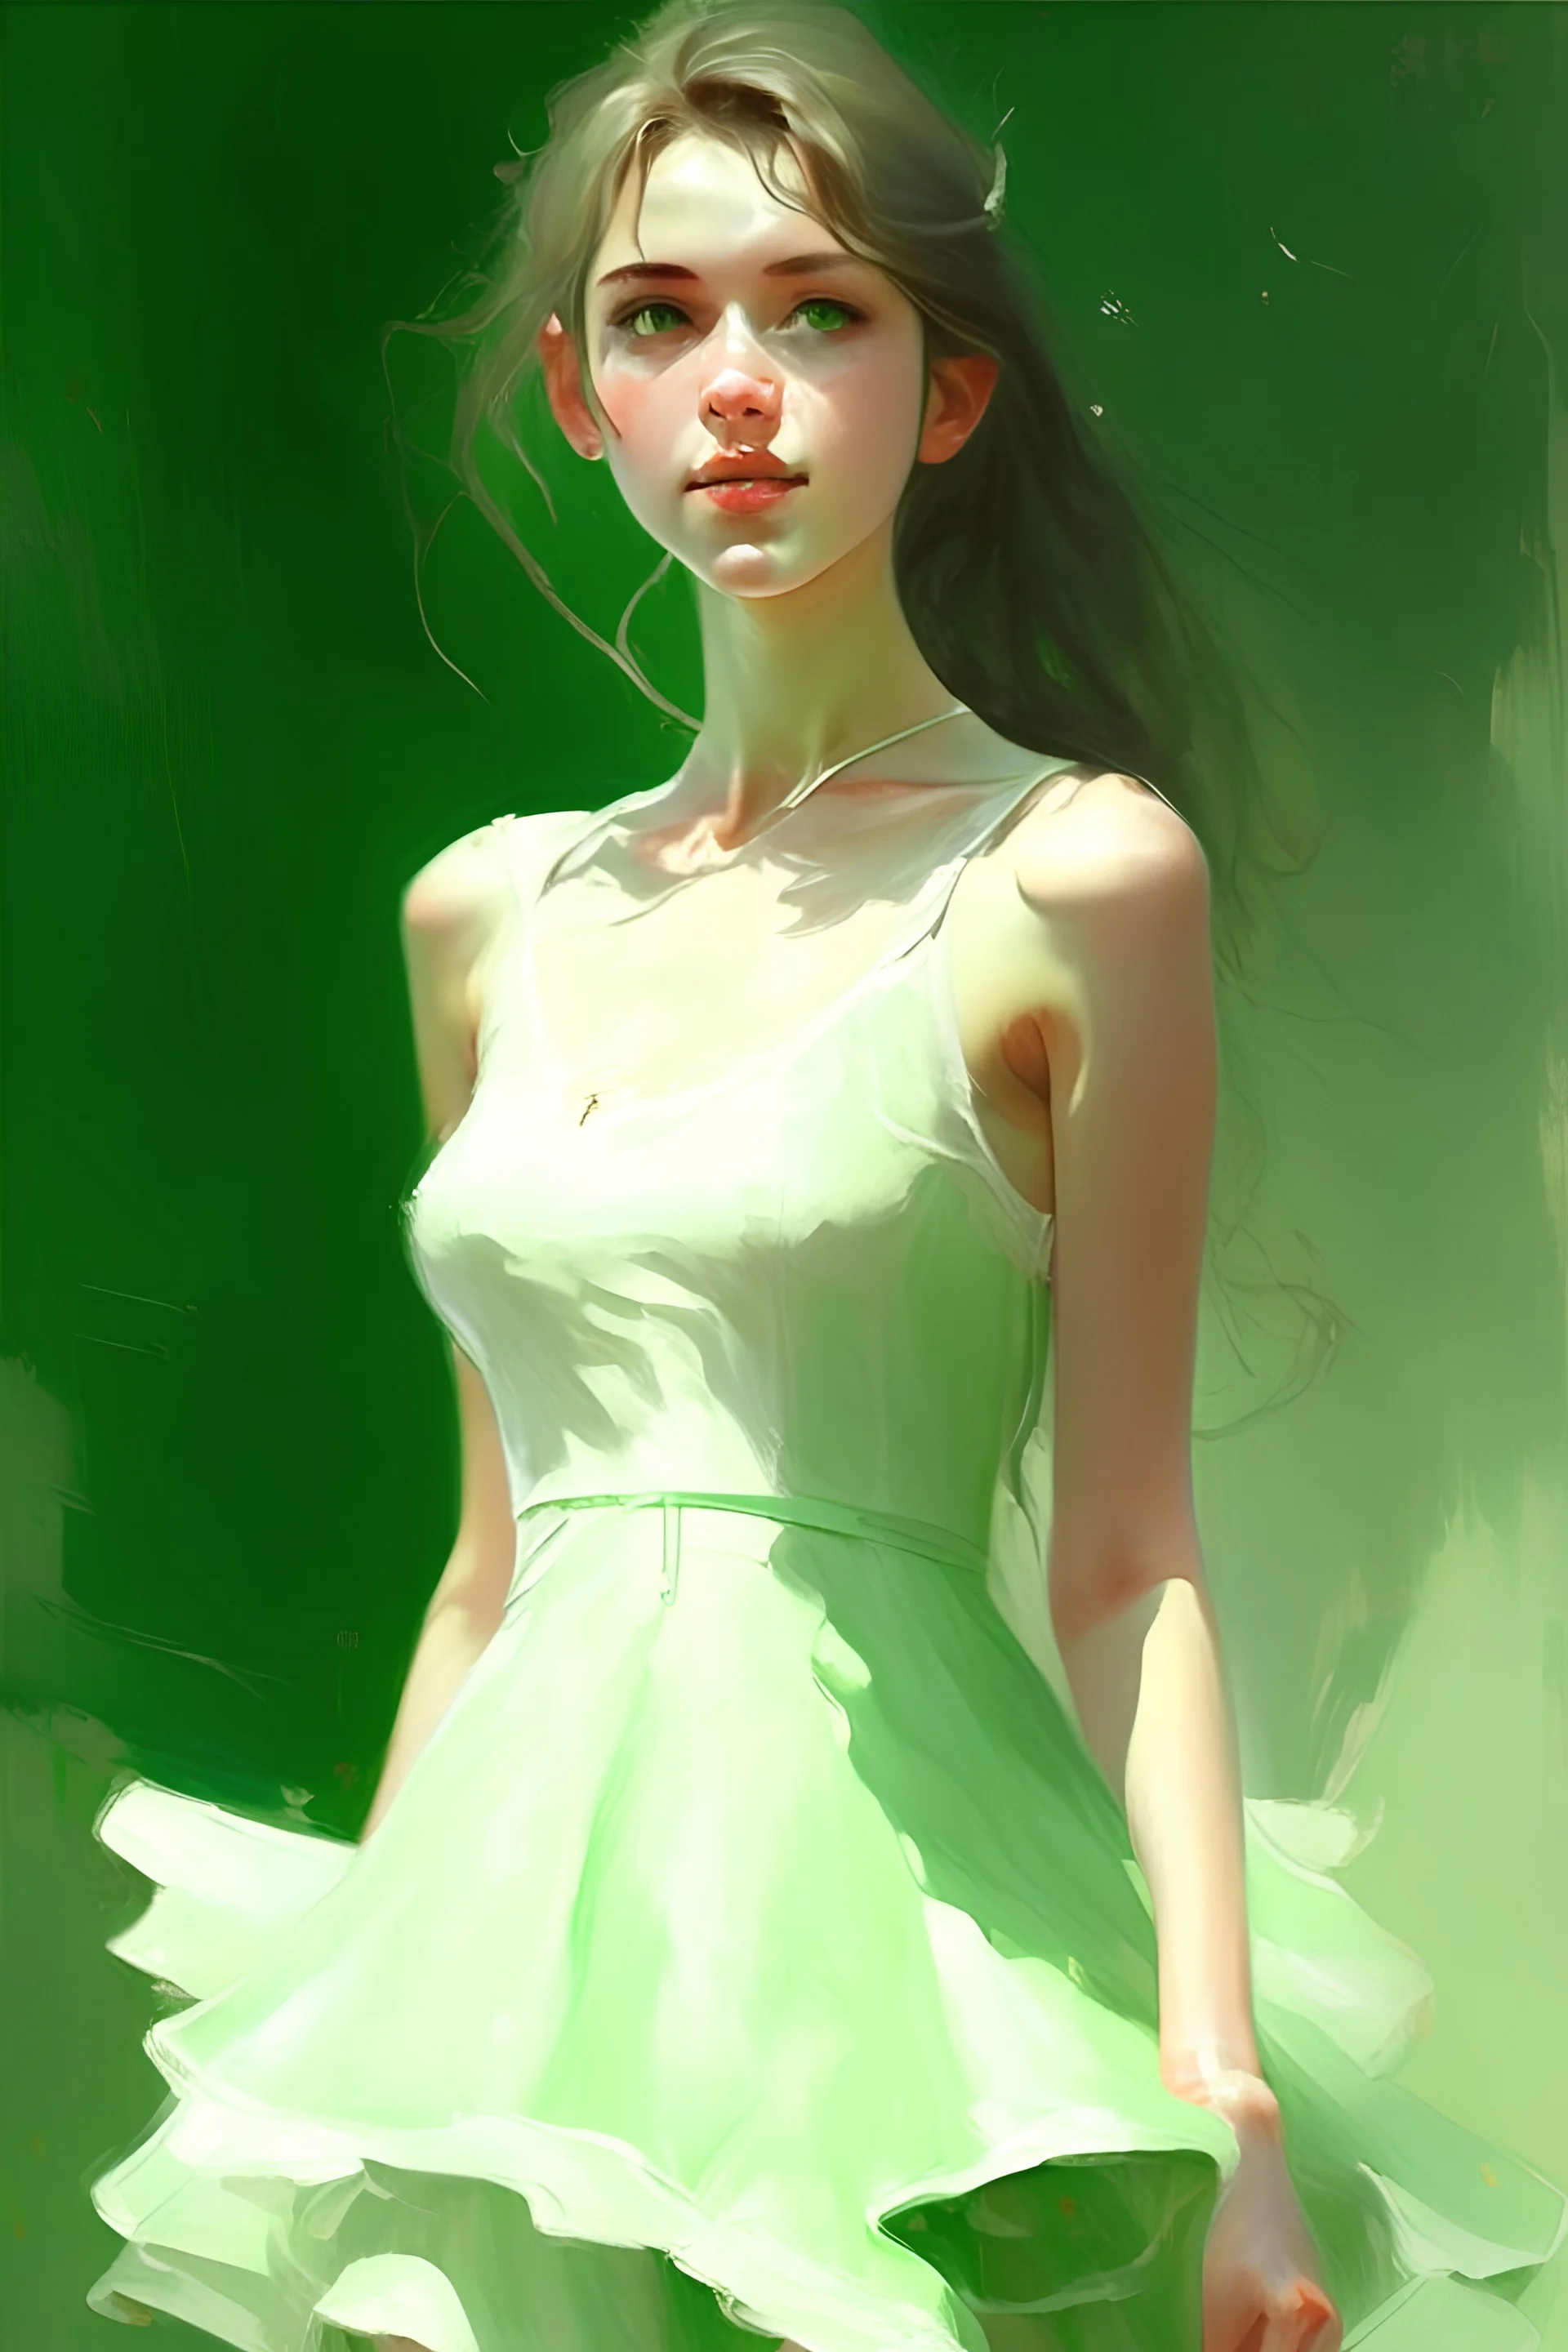 فتاة فاتنة بفستان اخضر شفاف وقصير وفخدين شديدين البياض